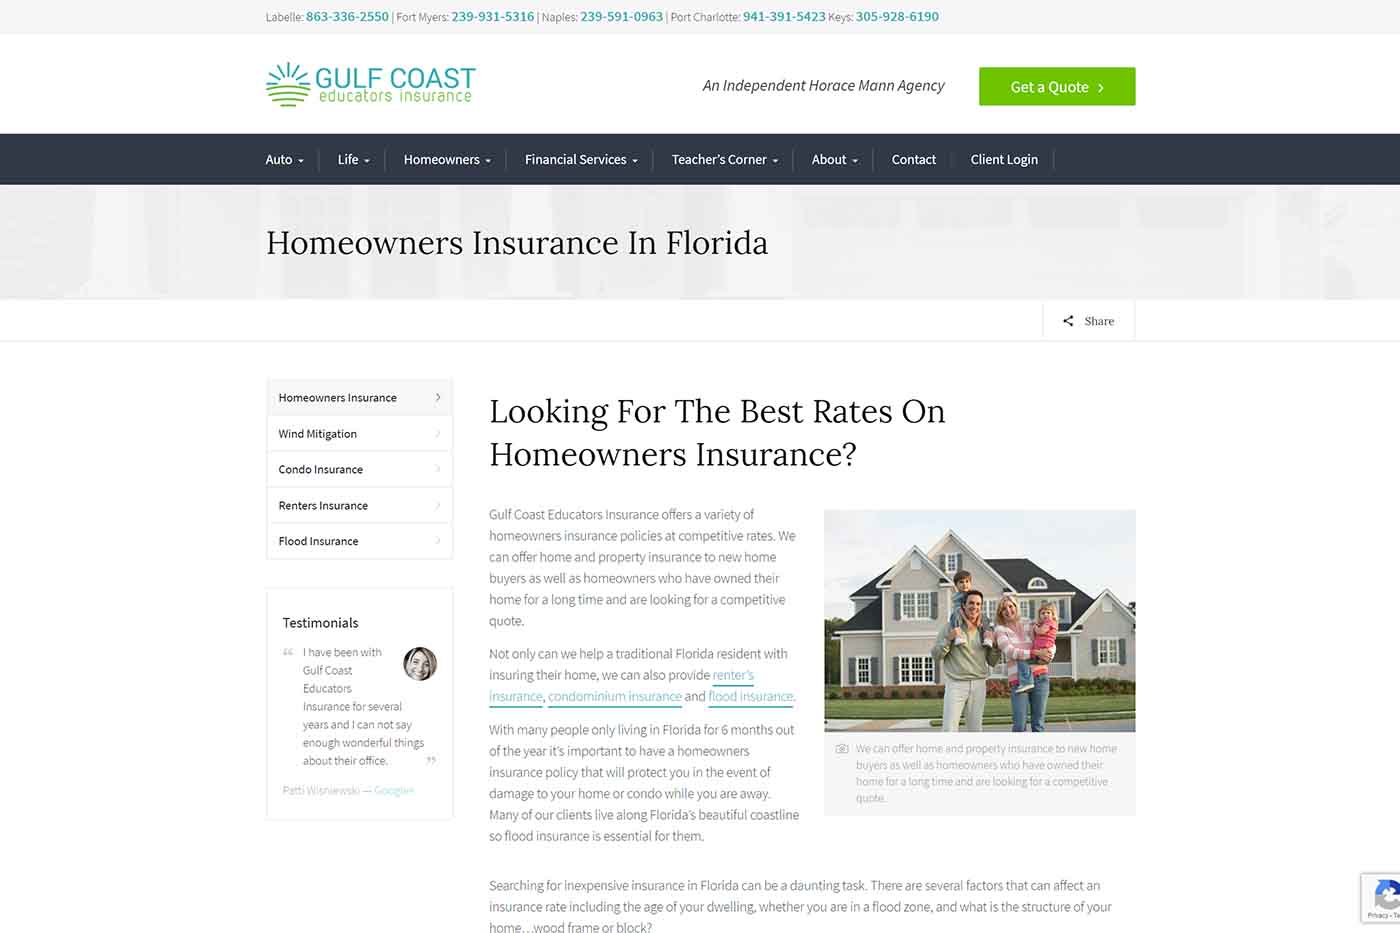 Gulf Coast Educators Insurance